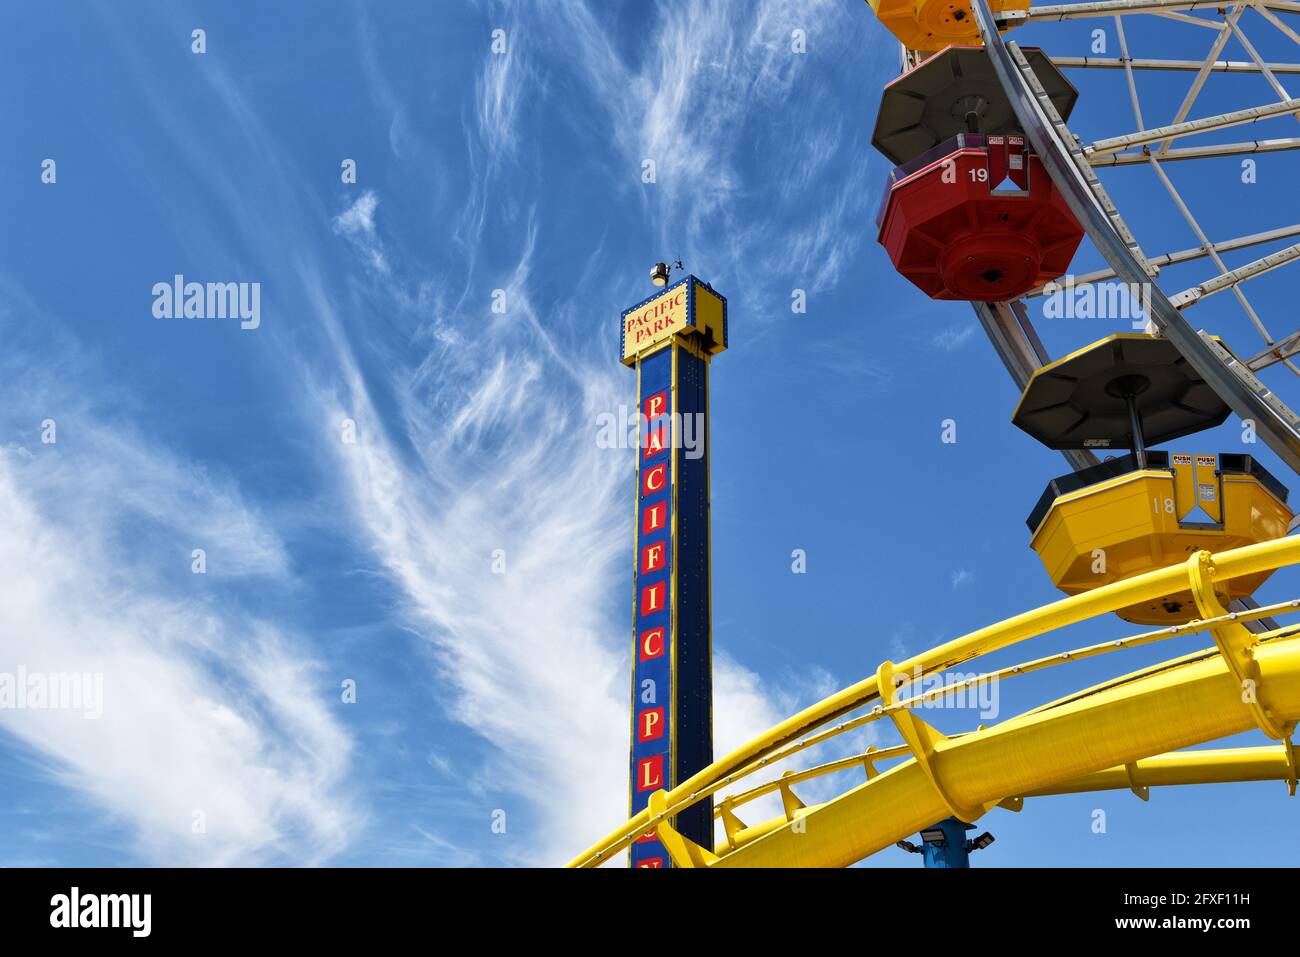 SANTA MONICA, KALIFORNIEN - 25. MAI 2021: Nahaufnahme des Riesenrads, des Roller Coasters und der Pacific Plunge Rides im Pacific Park am Santa Monica Pier. Stockfoto